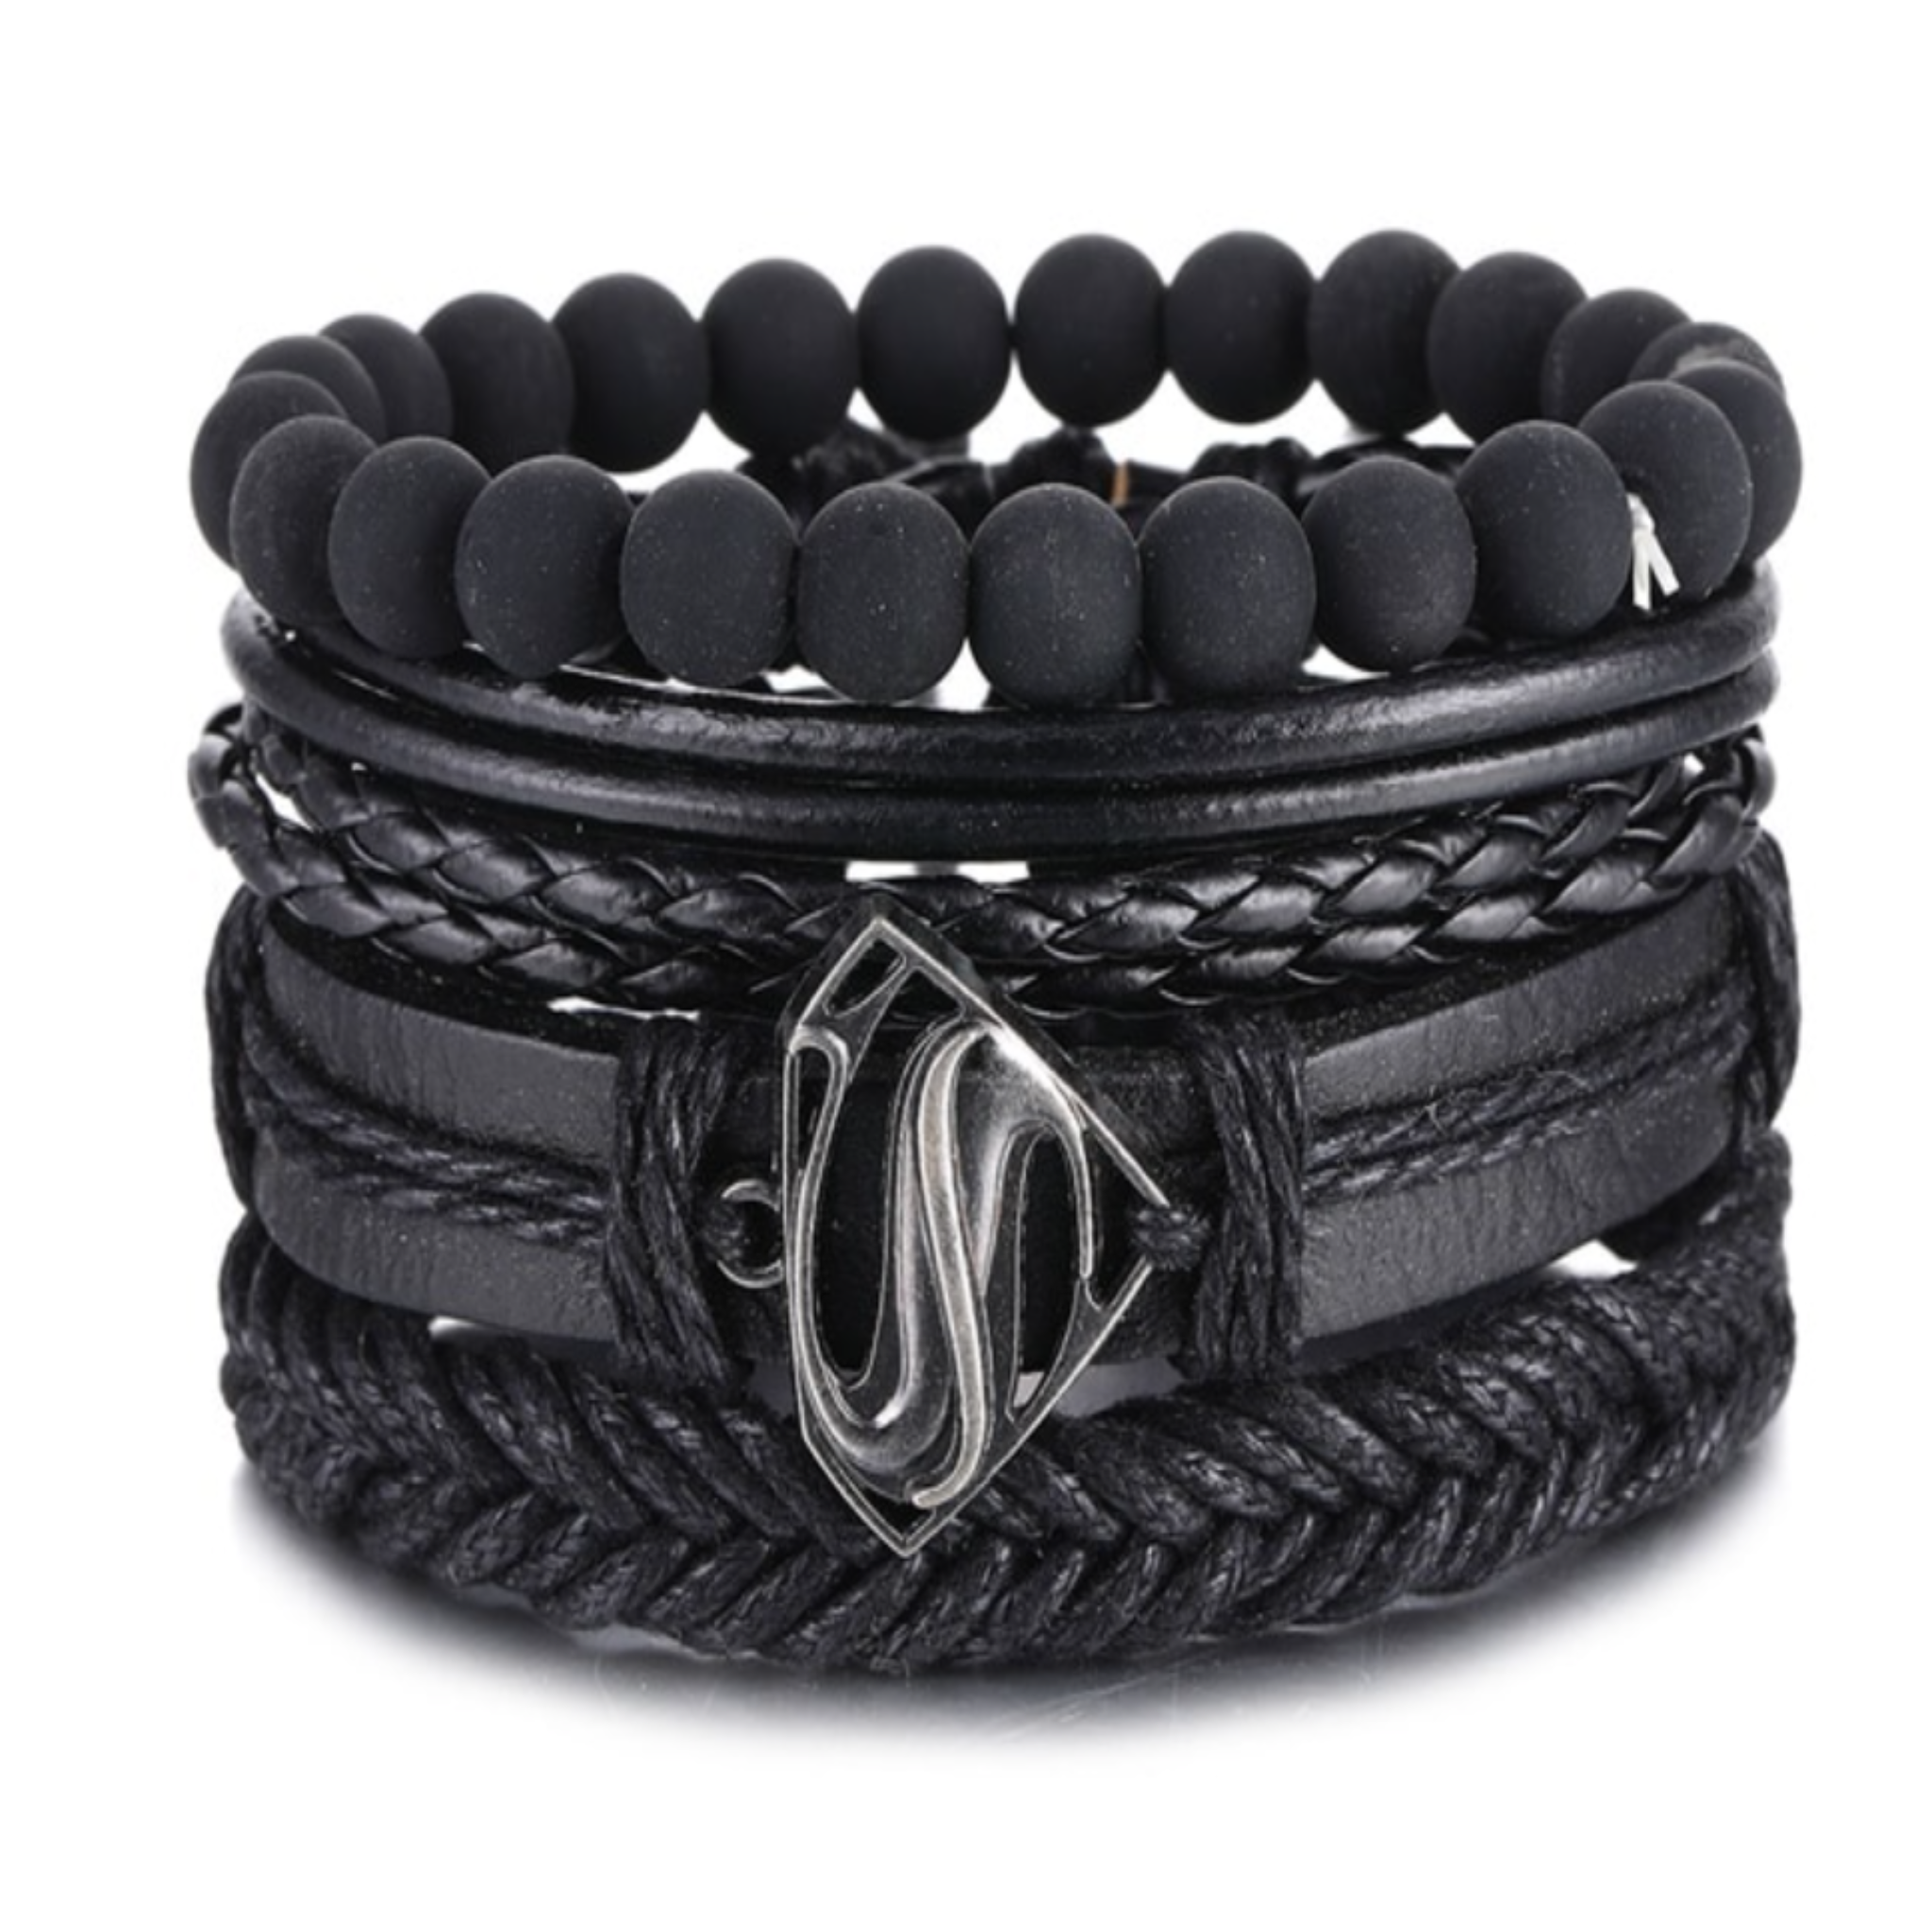 Multi-Strand Leather Bracelets